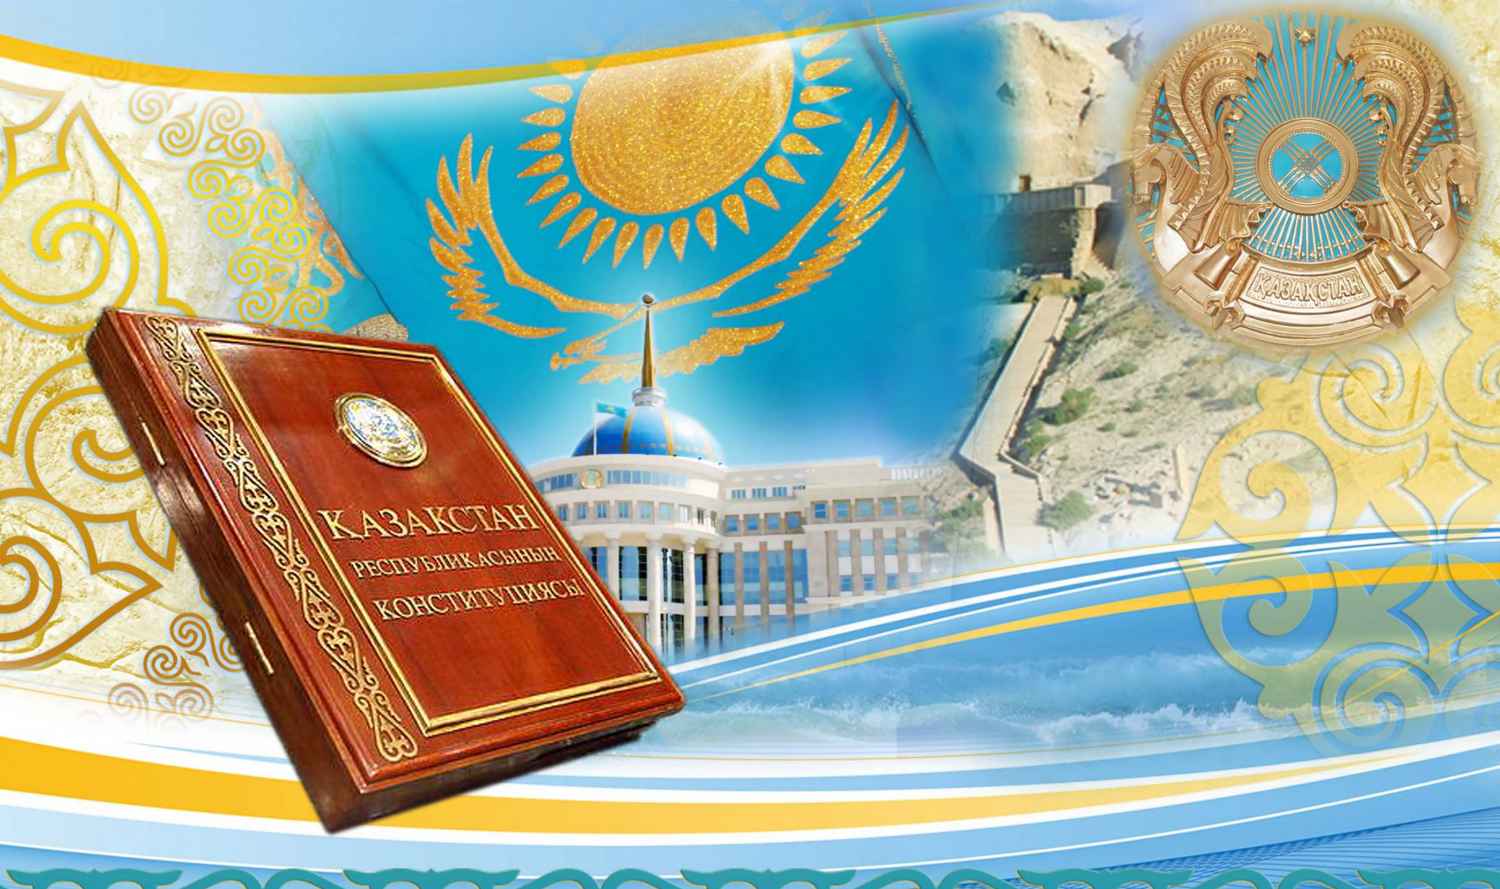 Поздравление Казахстан 2021